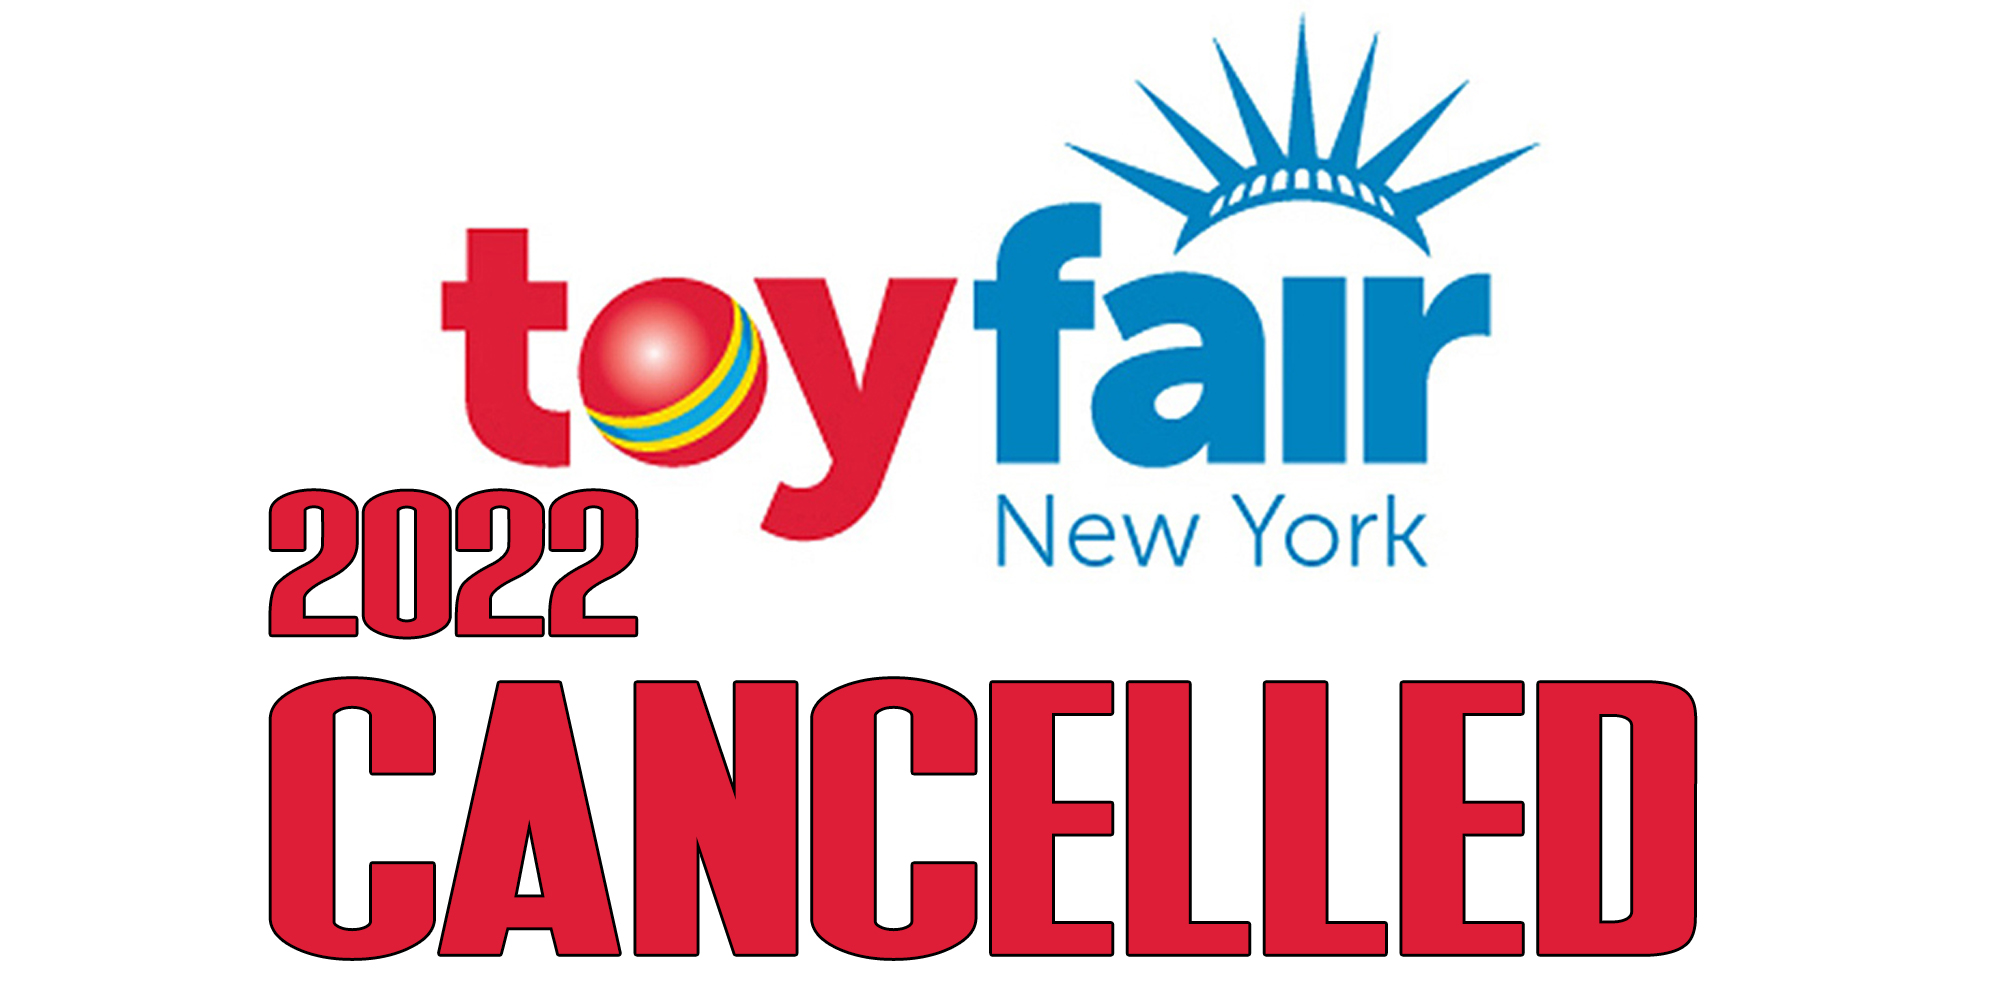 New York Toy Fair 2022 Cancelled